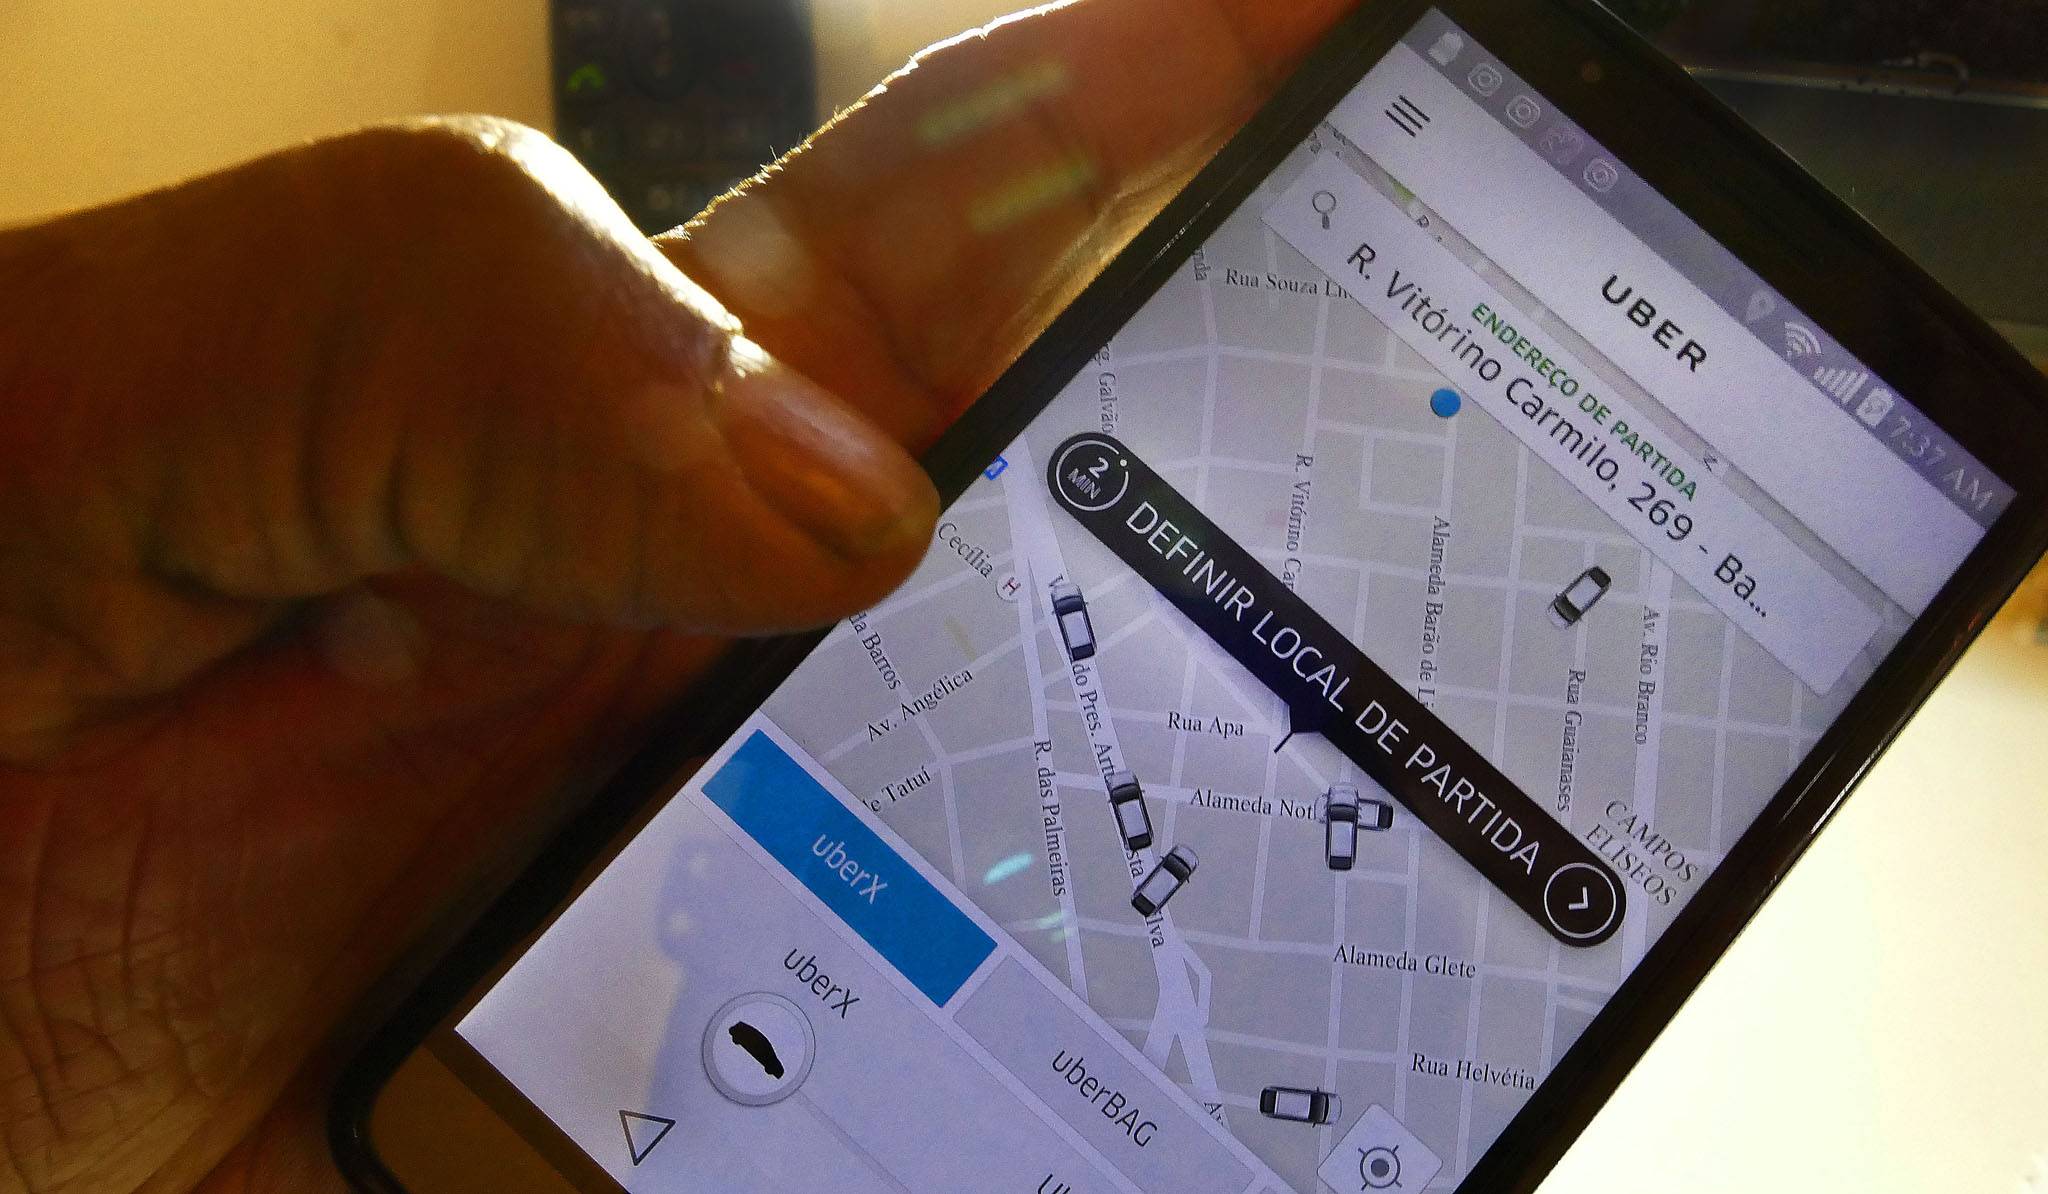 Taxa ao aplicativo Uber entra em discussão em Aparecida de Goiânia | Foto: Filipe Araújo/Fotos Públicas